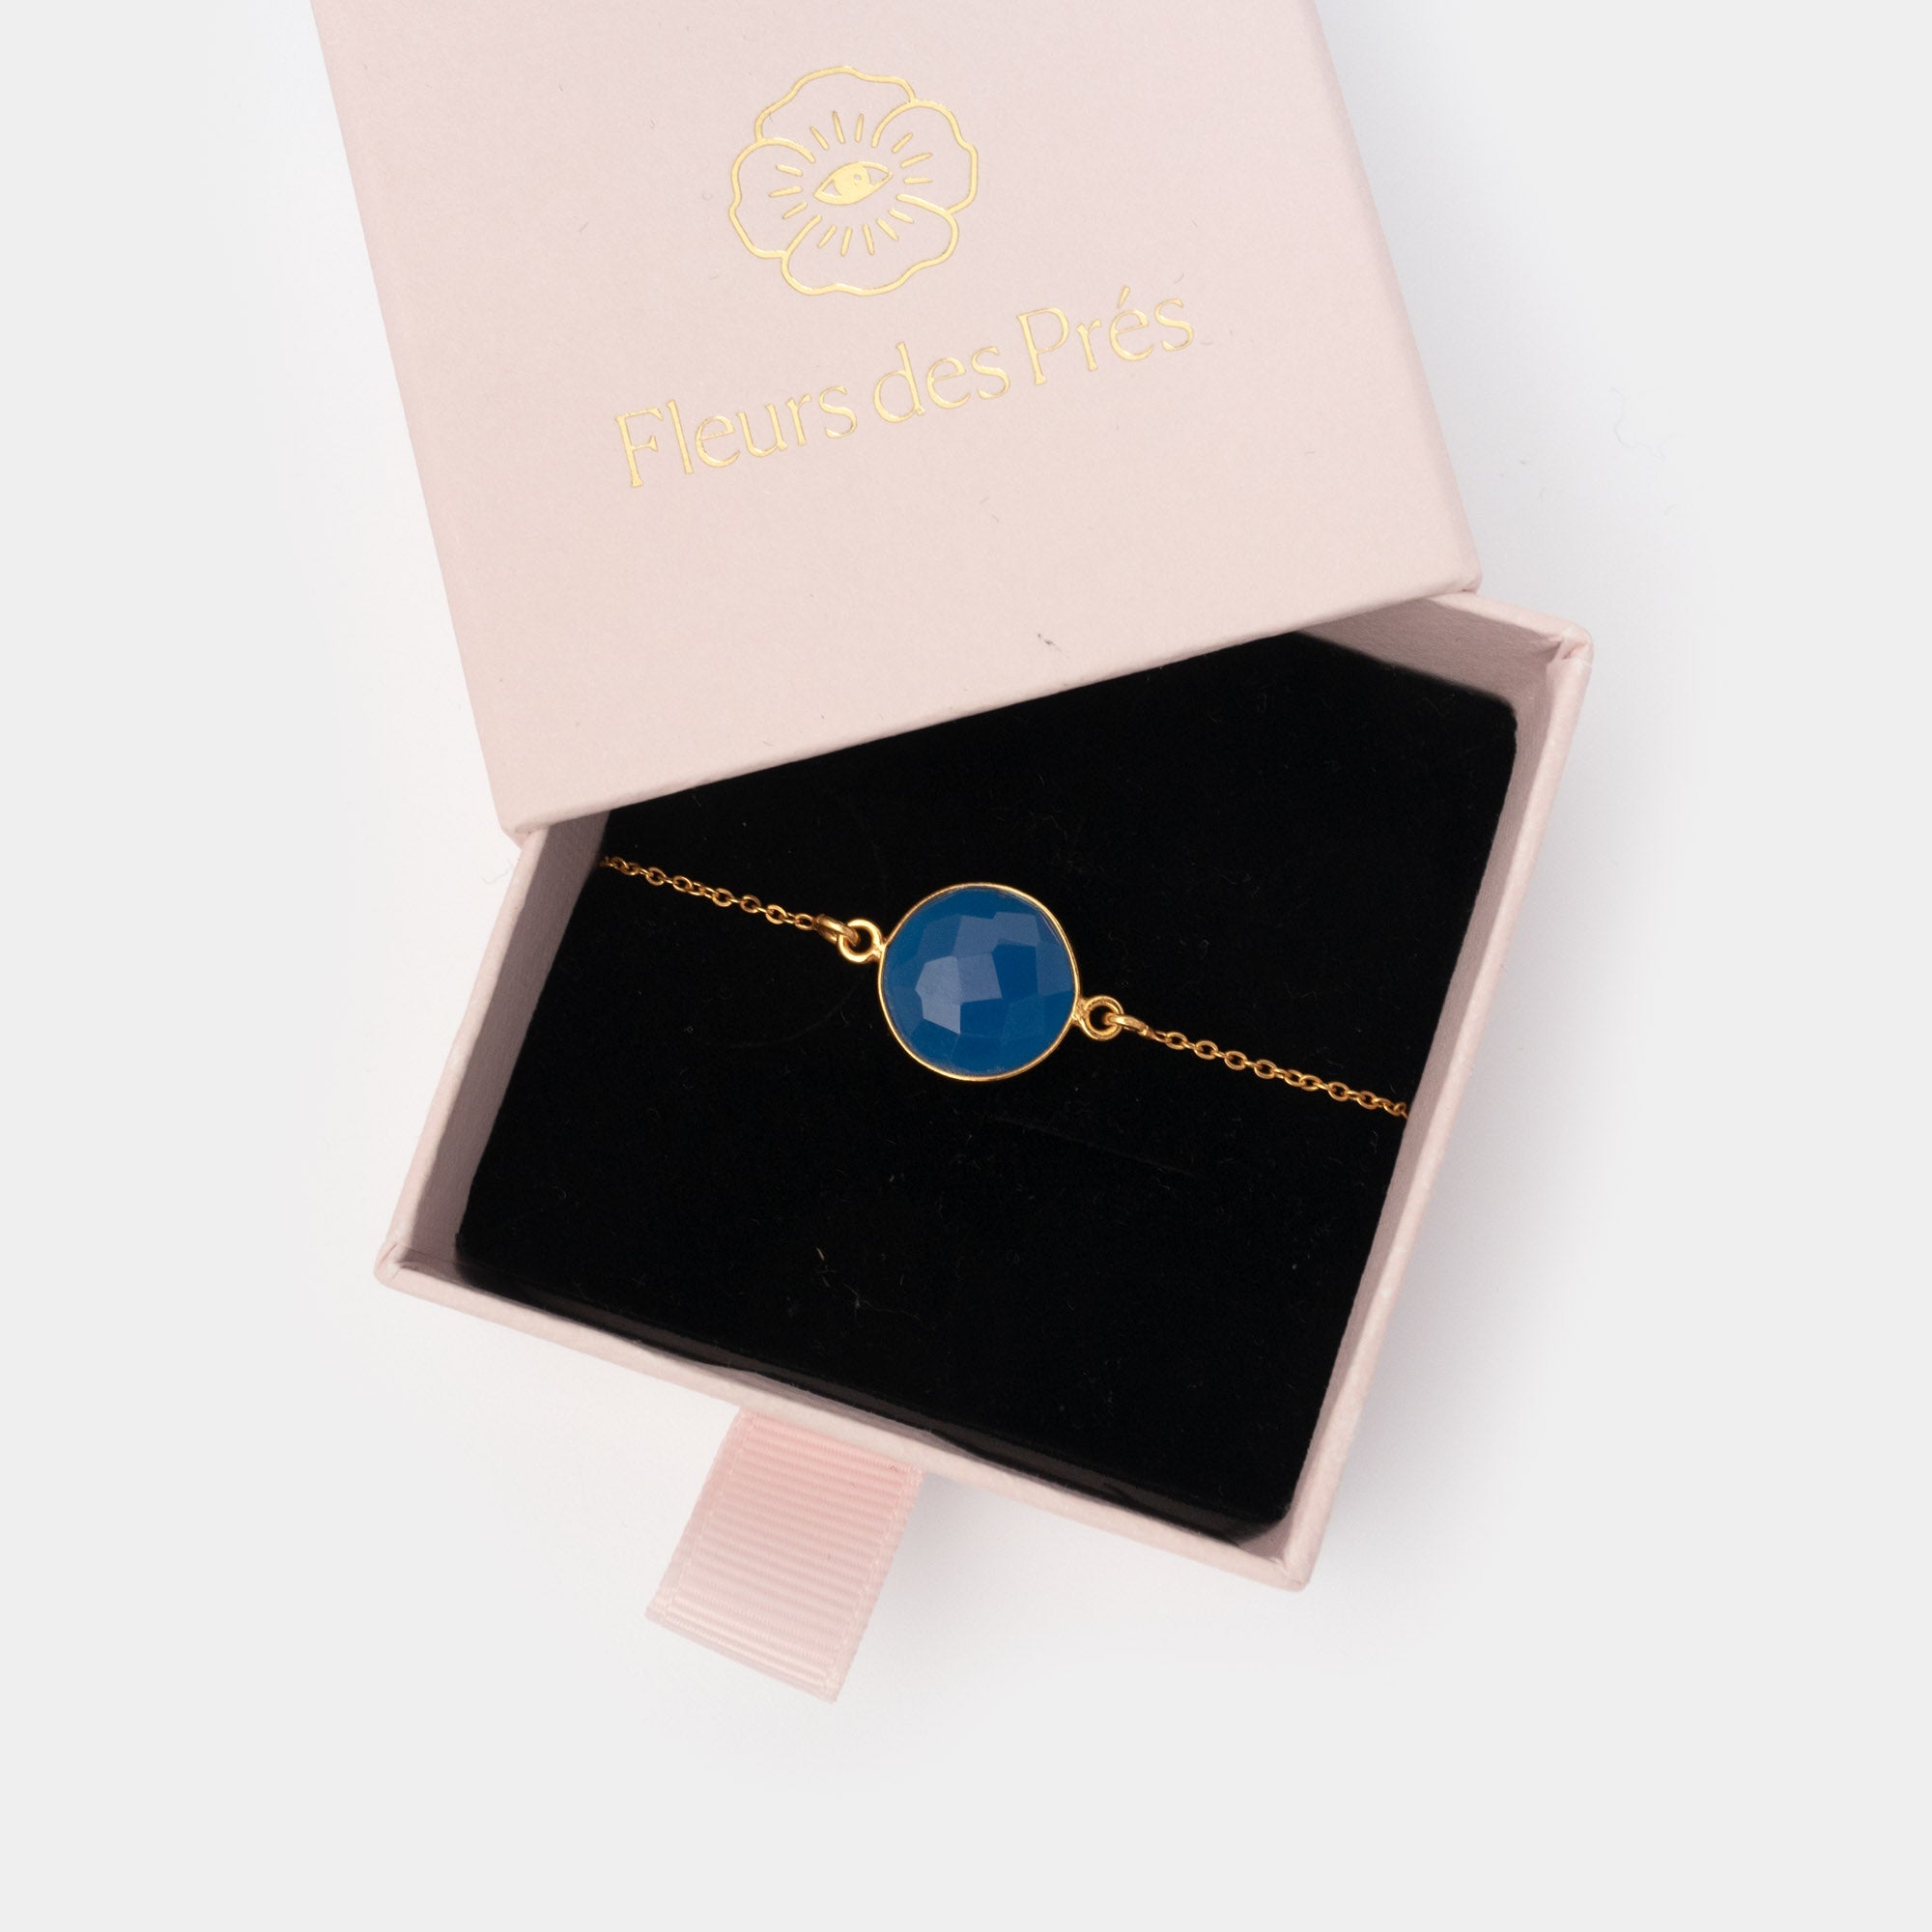 Armband Amélie Blue Chalcedony - Fleurs des Prés Jewelry